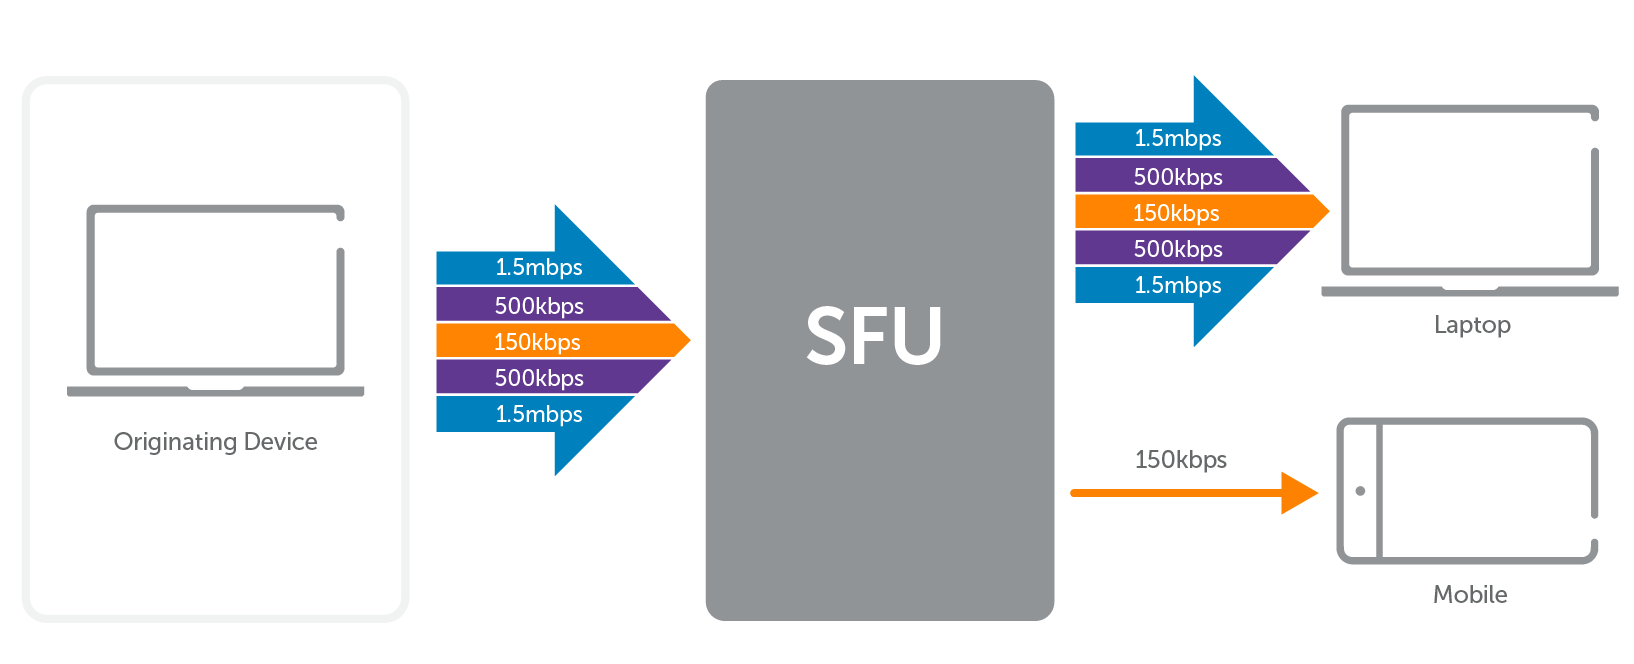 SFU 서버를 사용한 WebRTC 확장 가능한 비디오 코딩 워크 플로